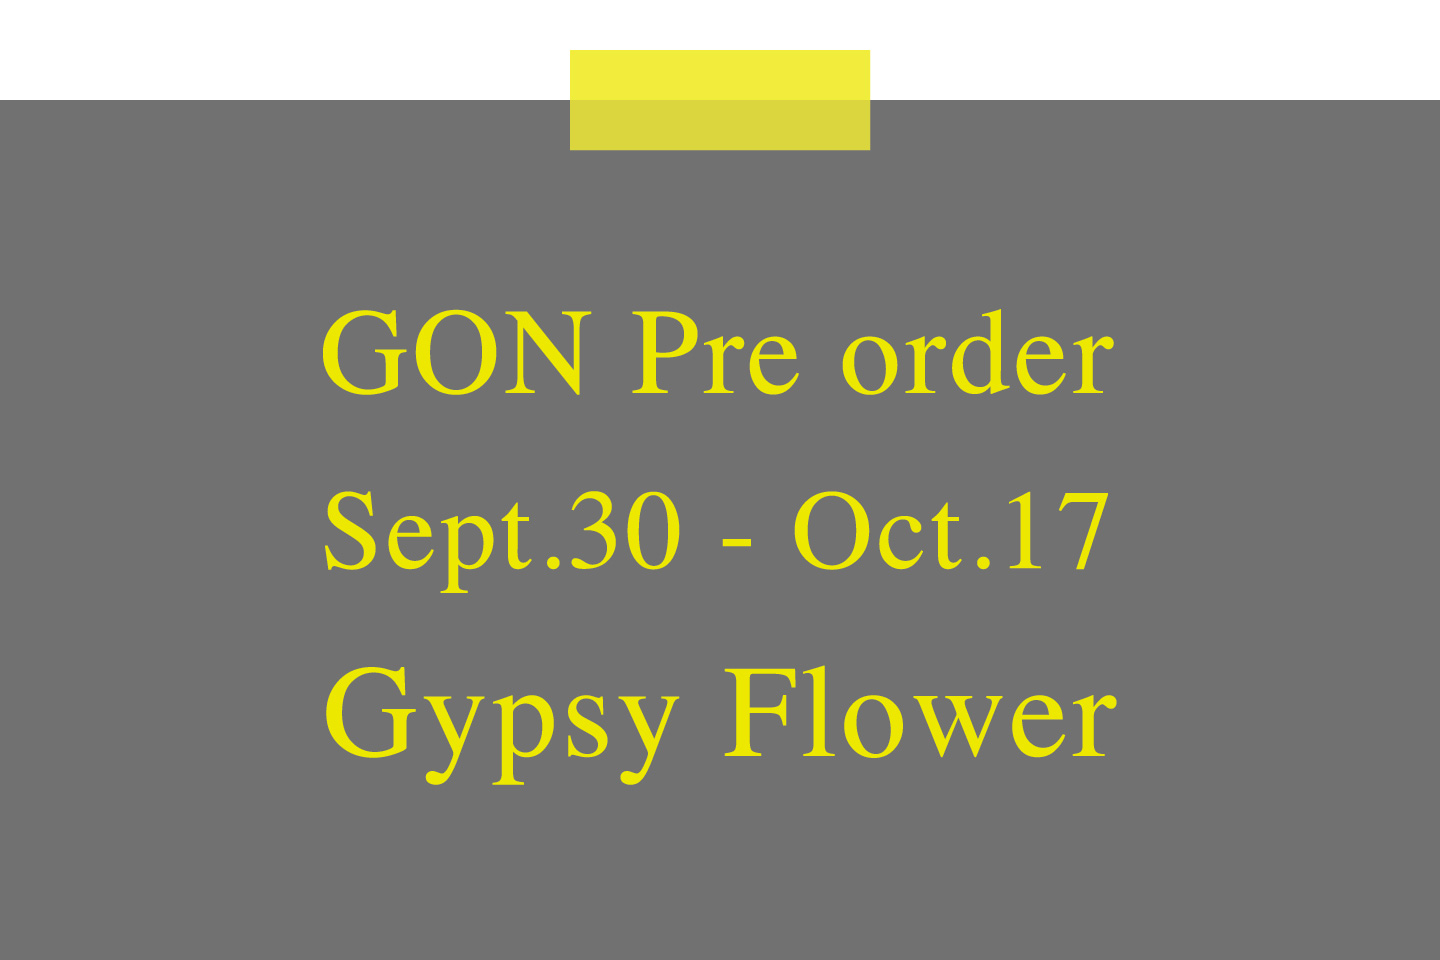 Gypsy Flower | GON Pre order